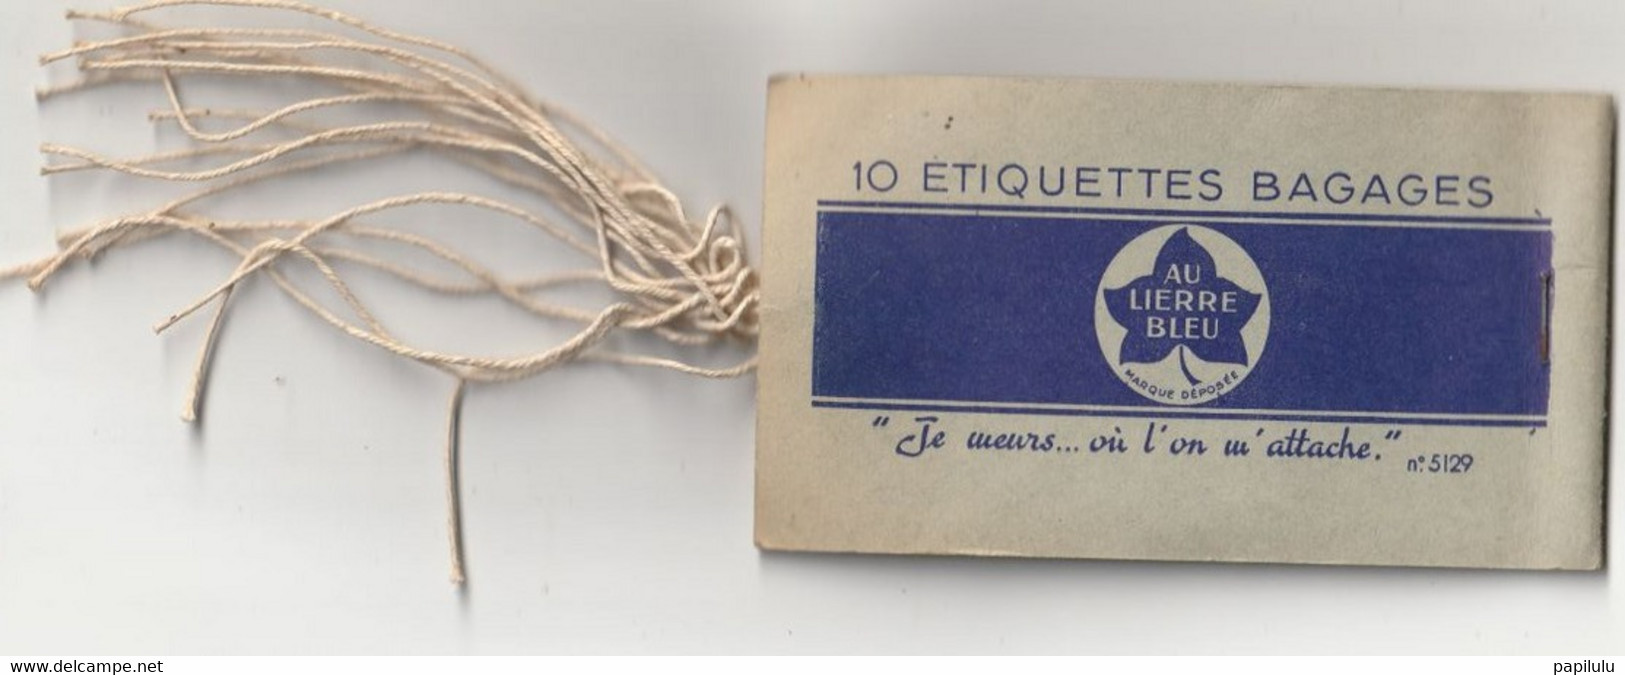 AUTRES COLLECTIONS 30 : Au Lierre Bleu 10 étiquettes Bagages ( Manque Une étiquette ) - Baggage Labels & Tags